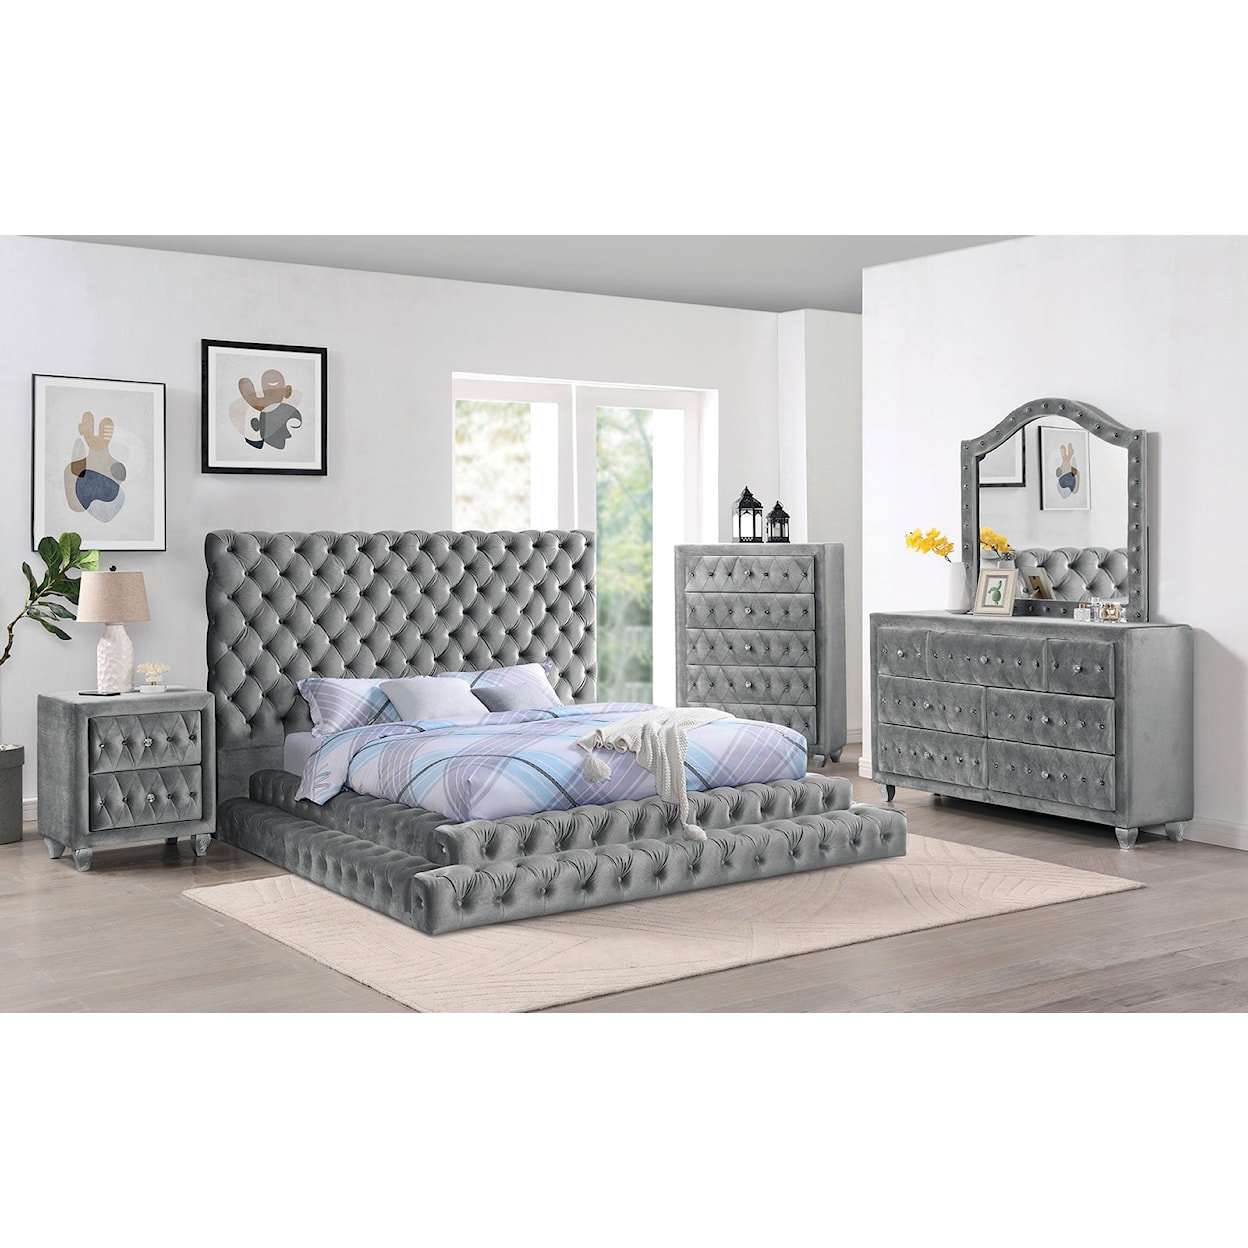 Furniture of America Stefania 5-Piece Queen Bedroom Set